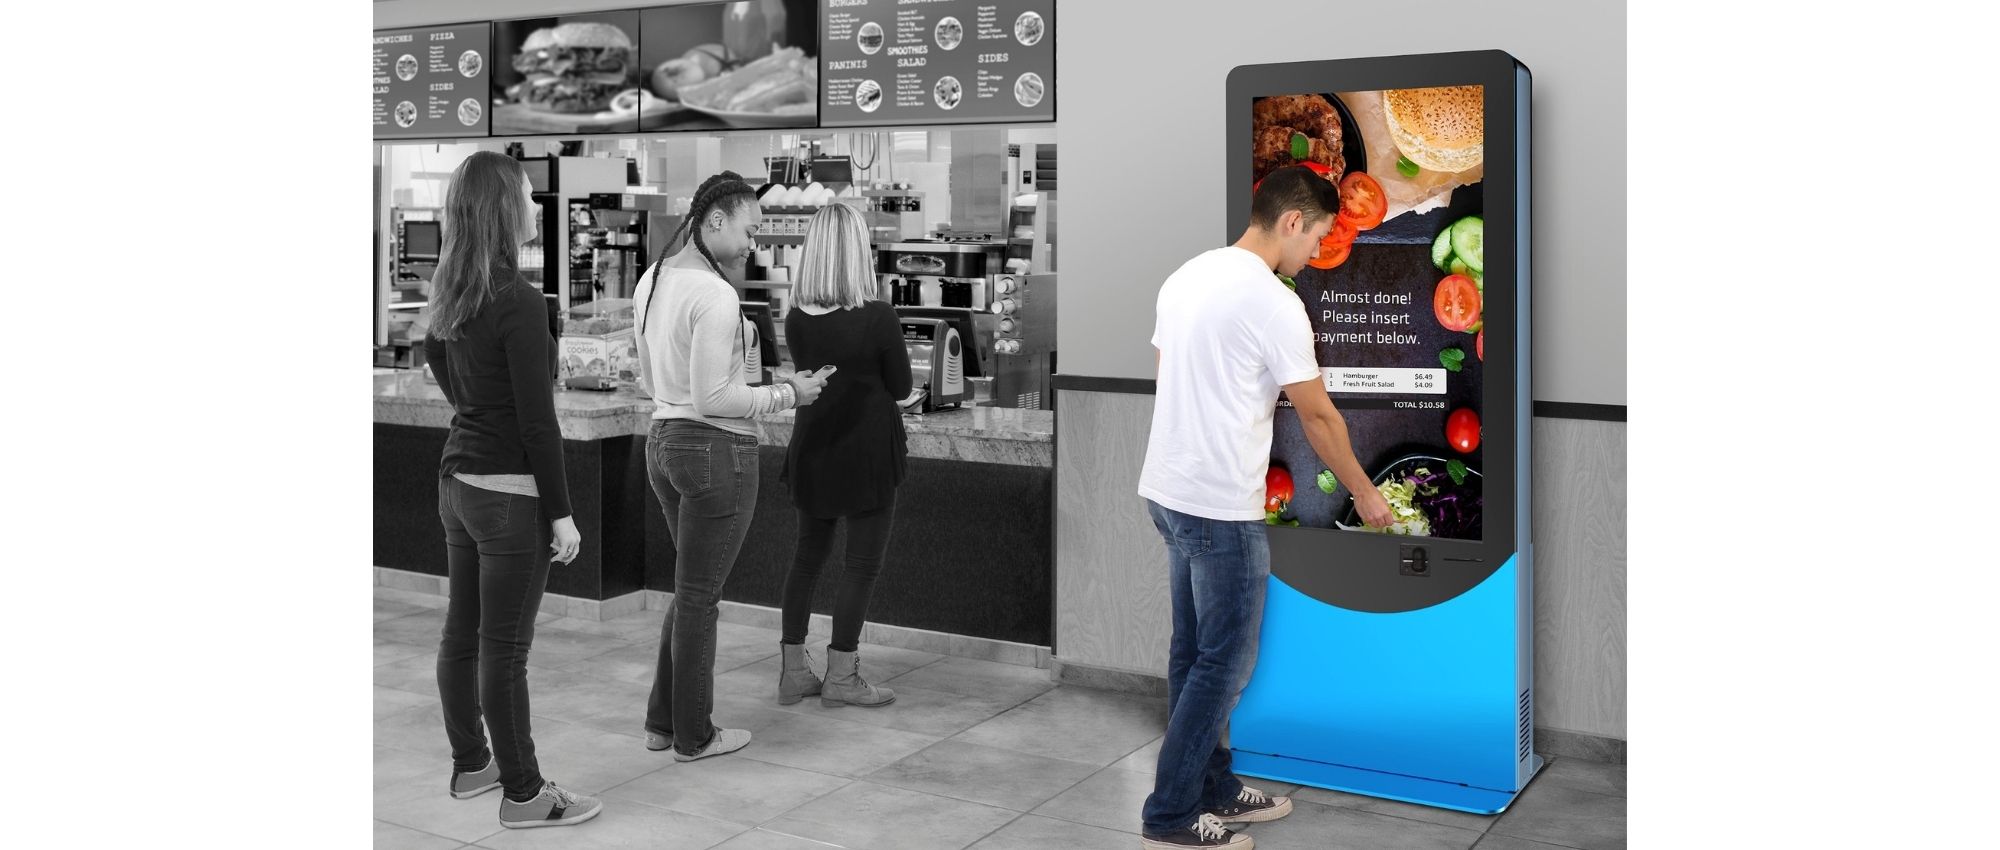 digital kiosk